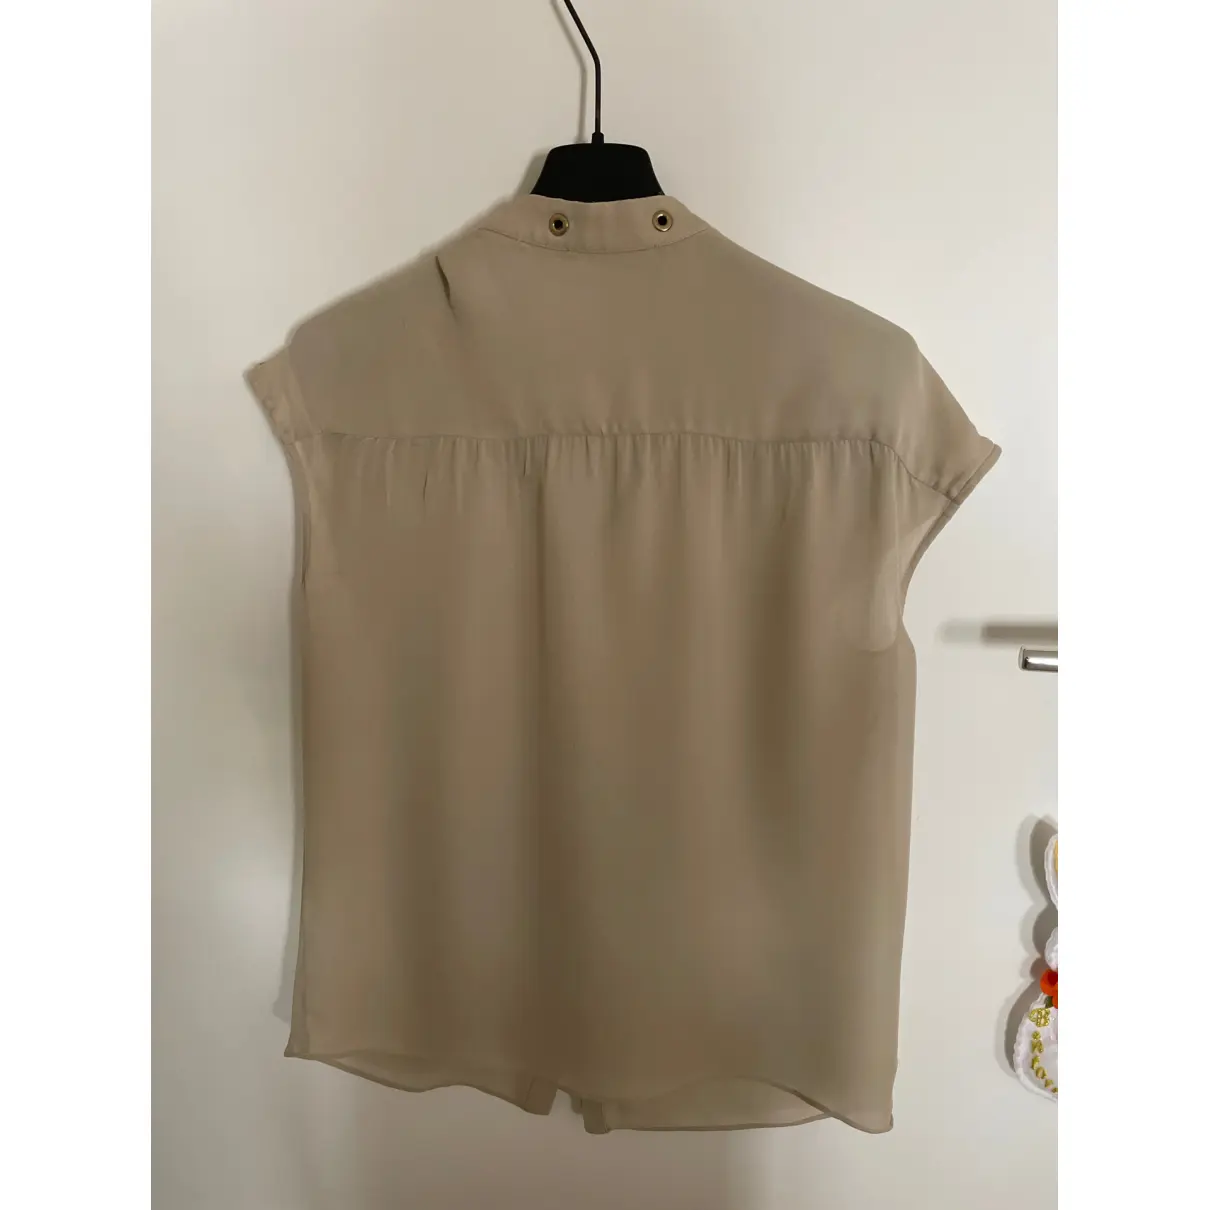 Buy Liu.Jo Silk blouse online